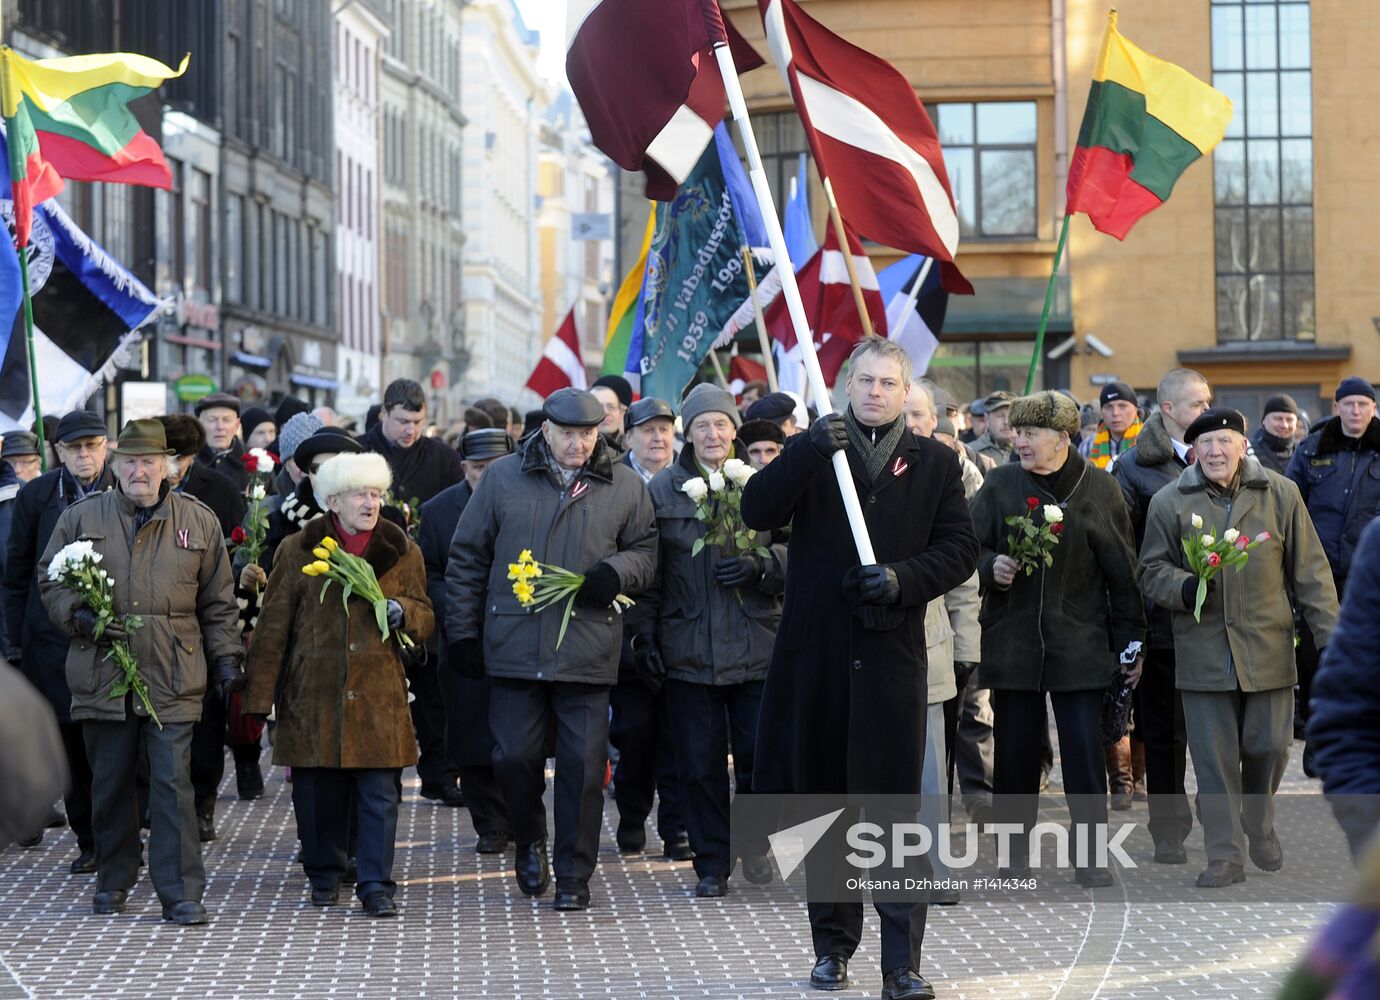 Latvian Waffen-SS Legion veterans march in Riga